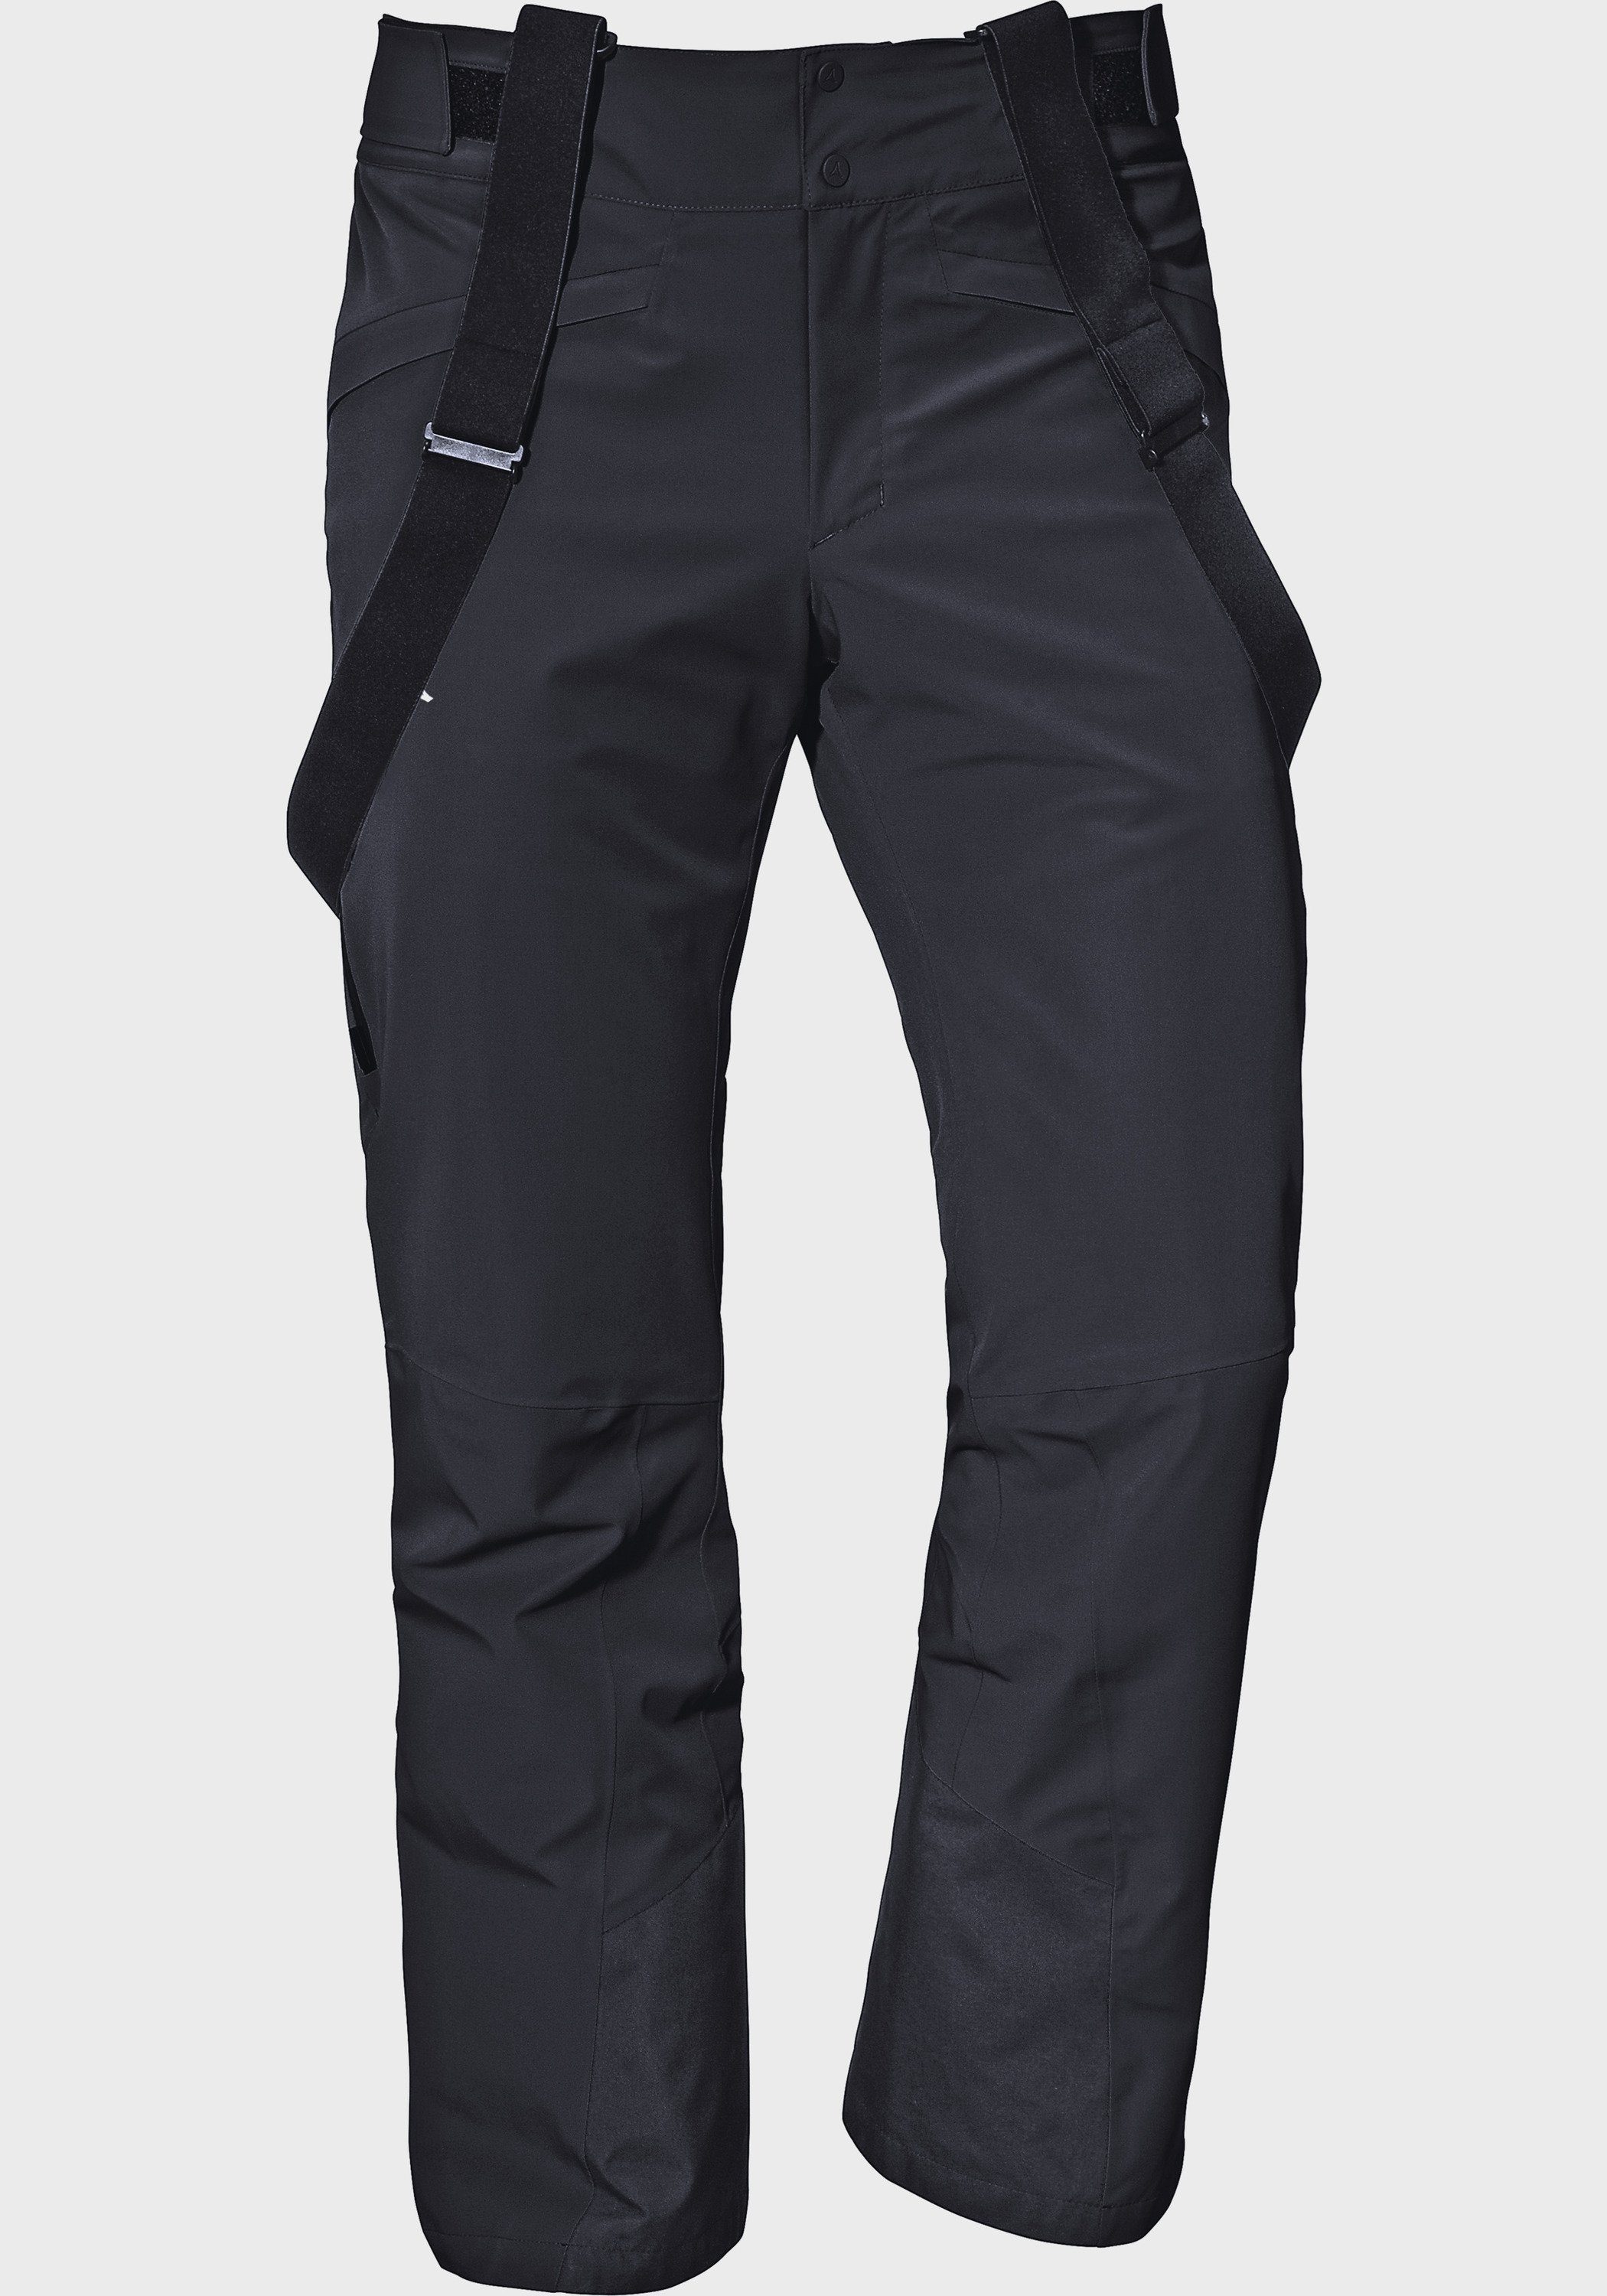 Scalottas Pants M, elastischer Latzhose und Ski Schöffel Komfortabler, ergonomischer Bund